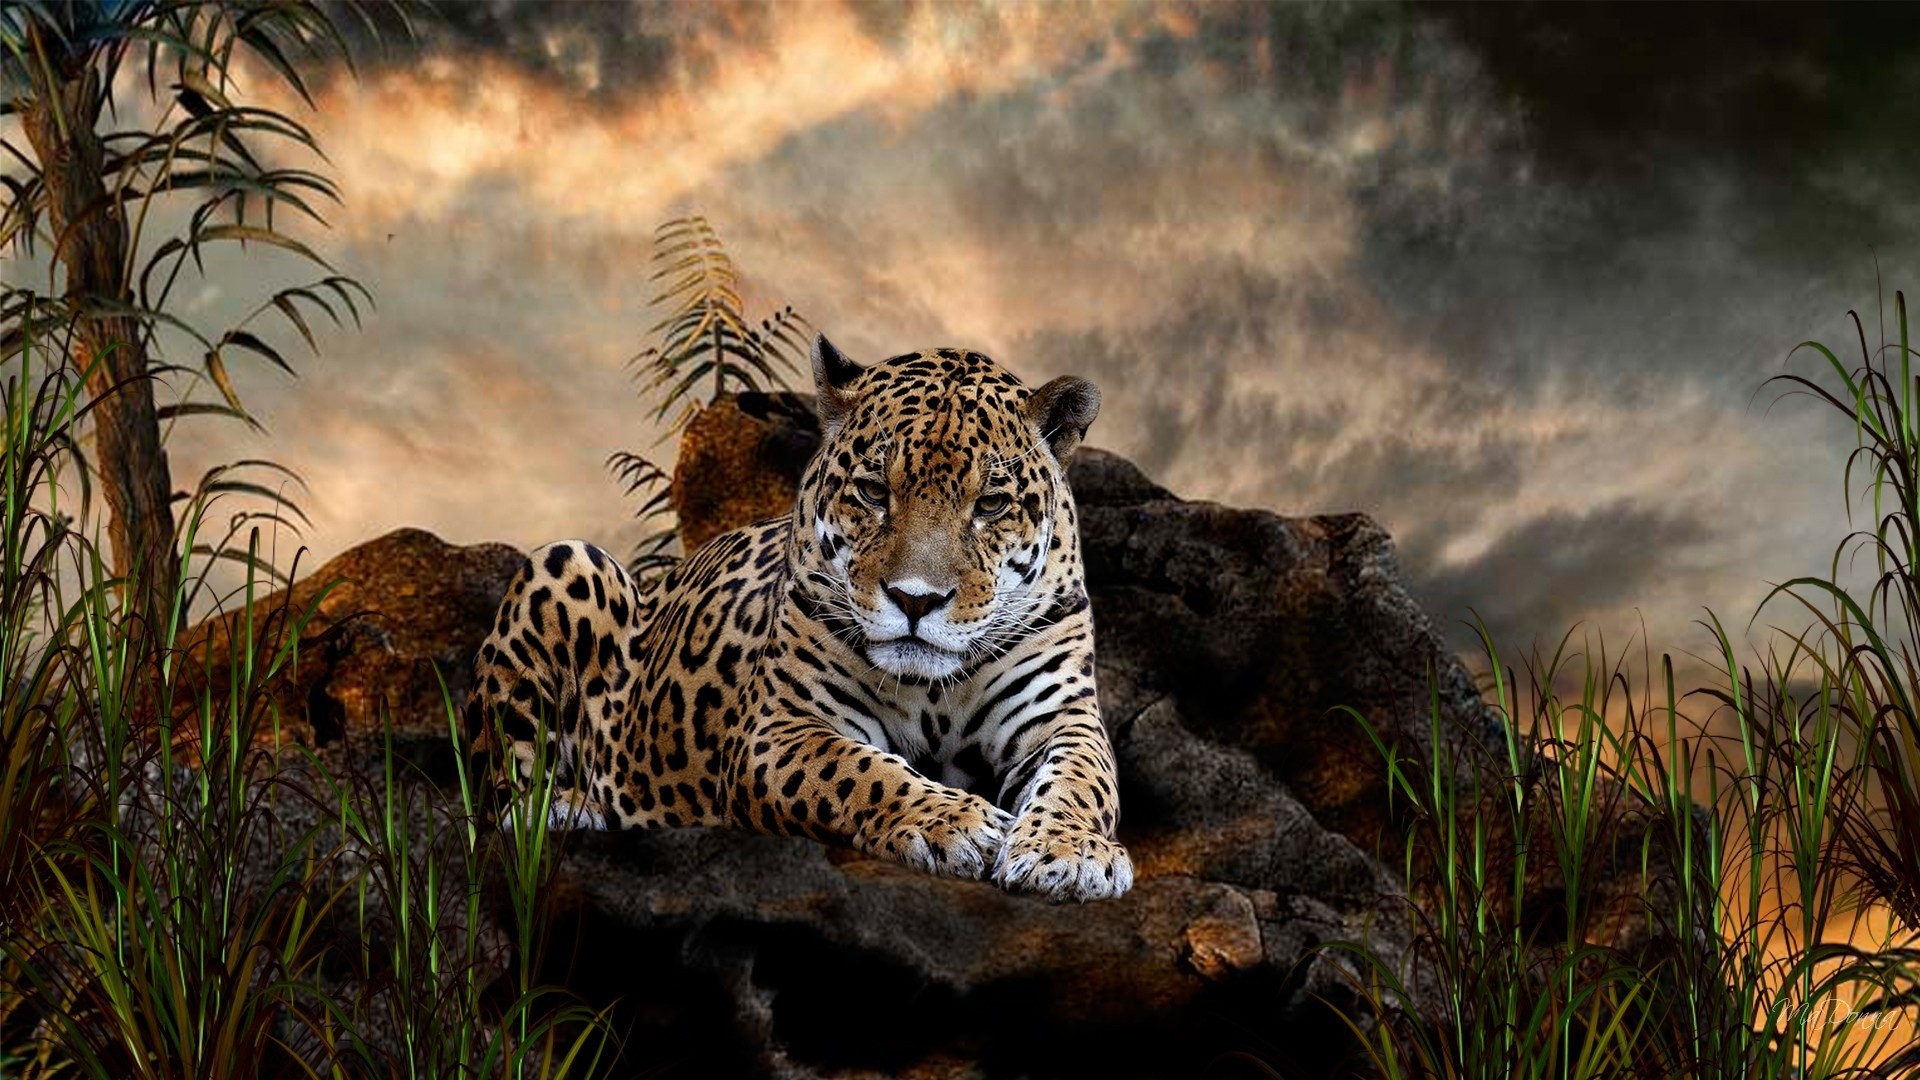 General 1920x1080 animals jaguars big cats nature mist mammals